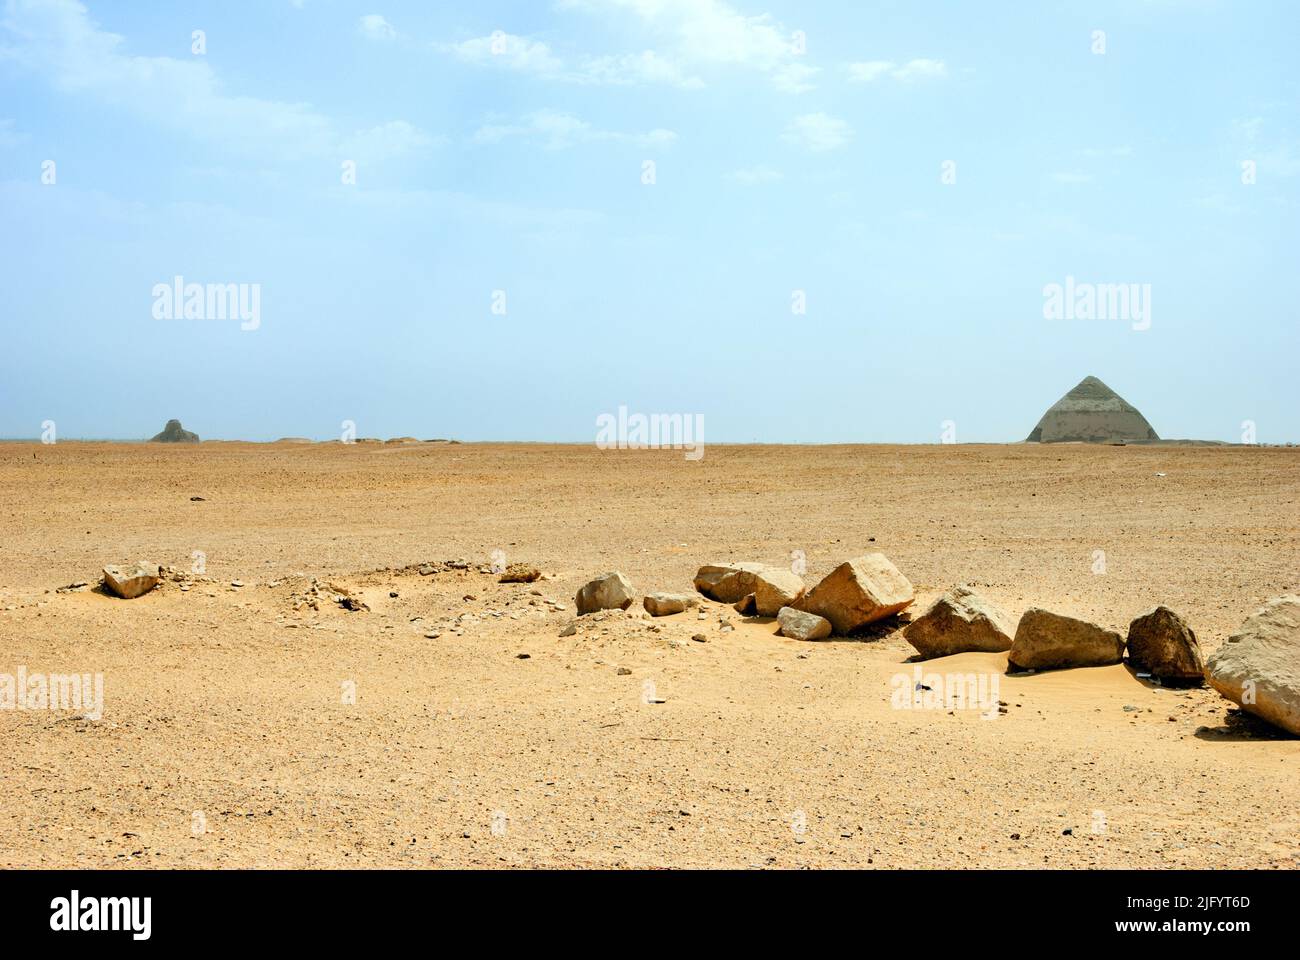 La 'Pyramide Noire' d'Amenemhat III (à gauche) et la pyramide courbée de Sneferu (à droite) à la nécropole royale de Dahshur - Basse-Égypte Banque D'Images